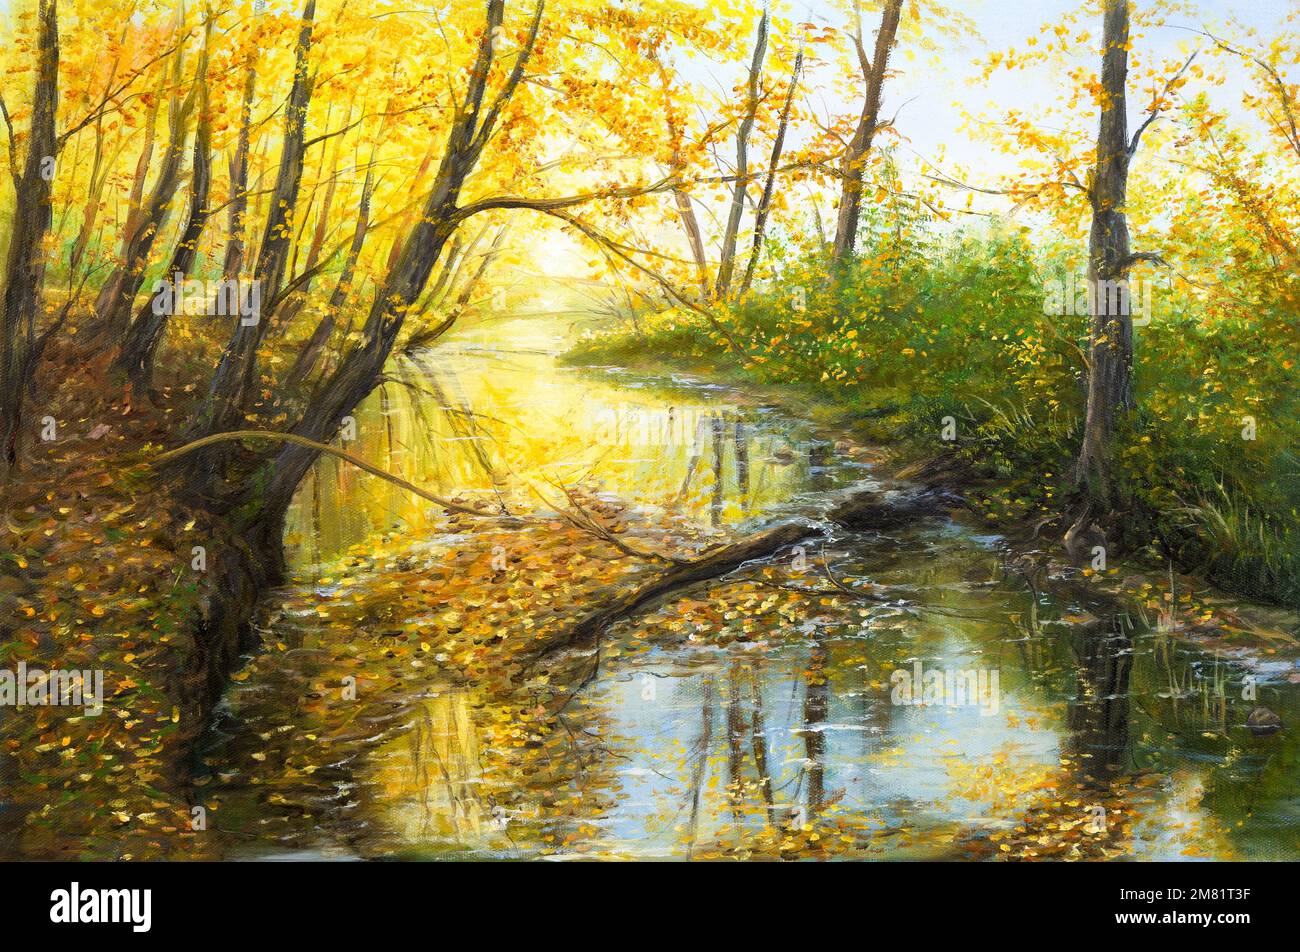 Peinture à l'huile originale de paysage d'automne magnifique, forêt, montagnes et rivière sur toile.Impressionnisme moderne, modernisme, marinisme Banque D'Images